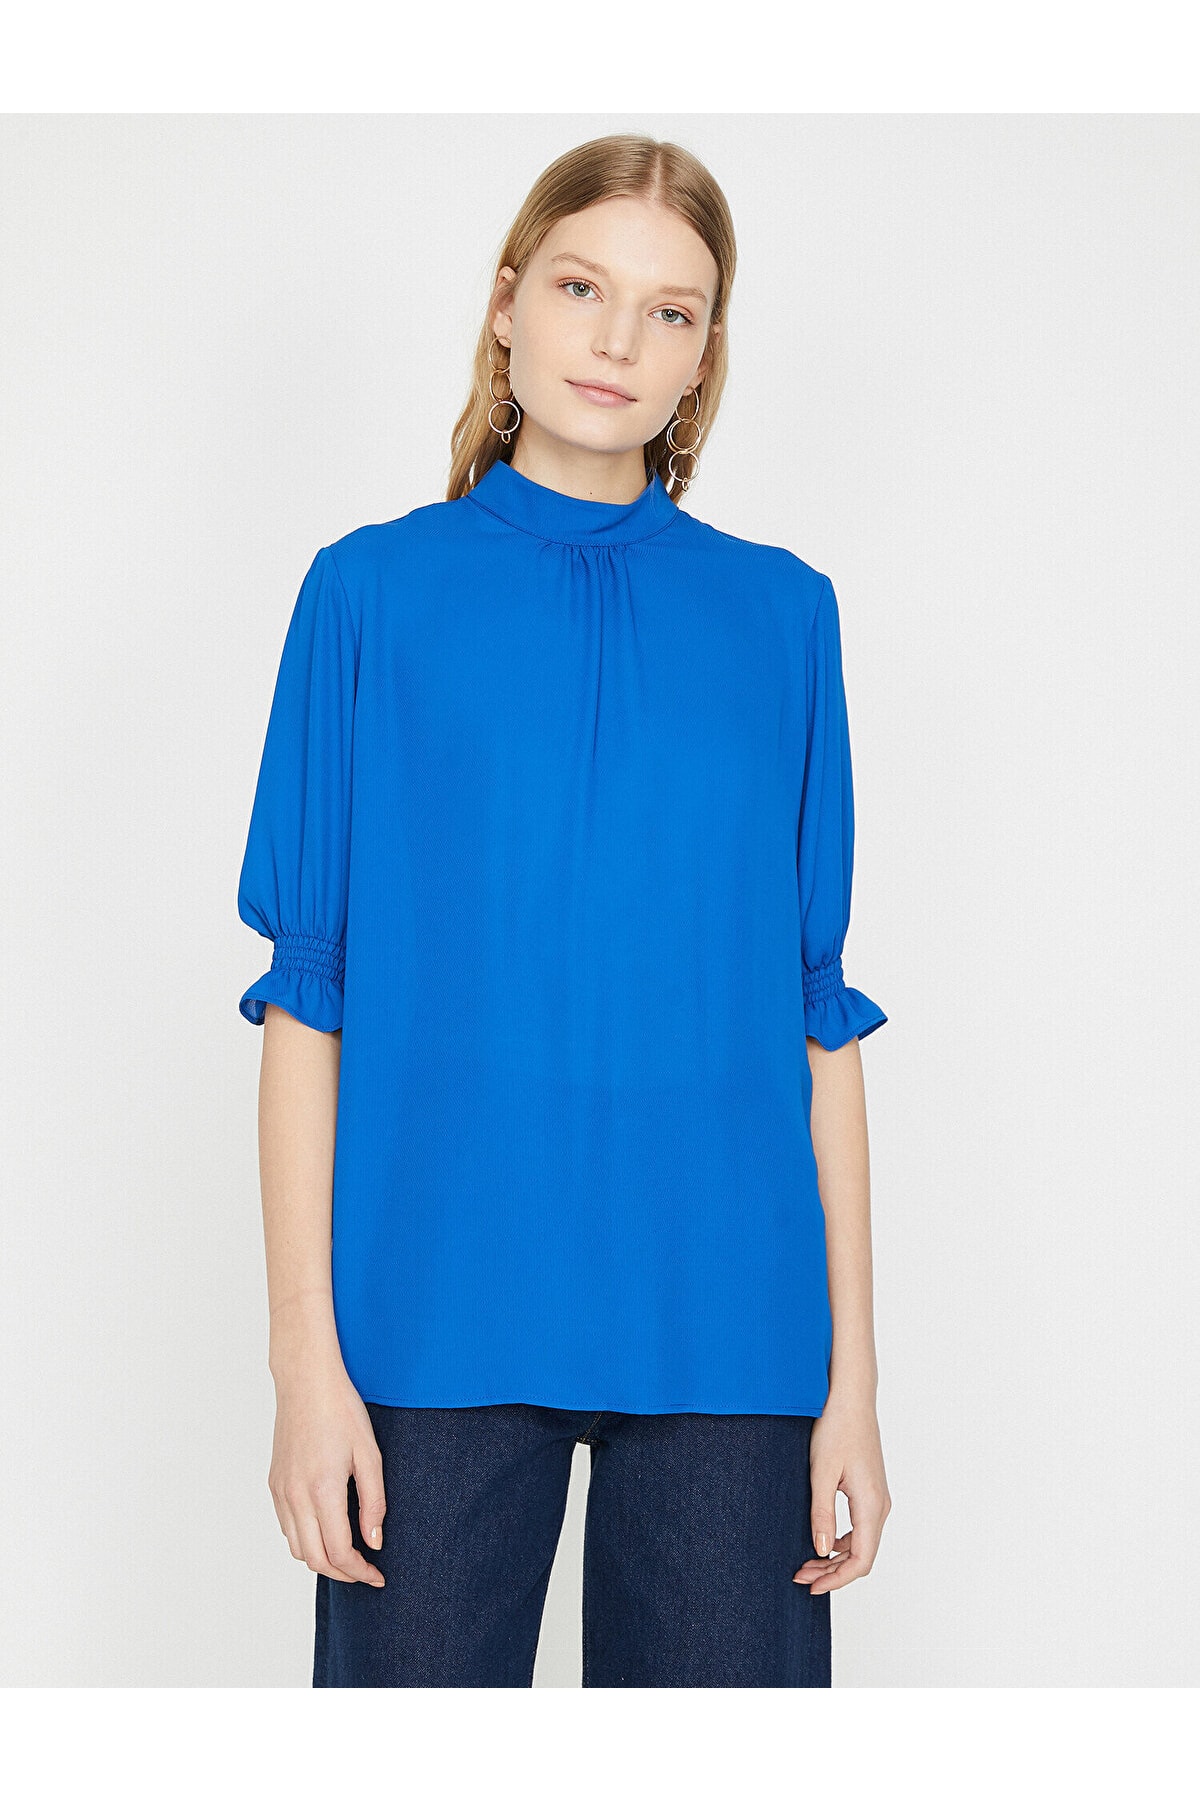 Koton Bluse Blau Regular Fit Fast ausverkauft